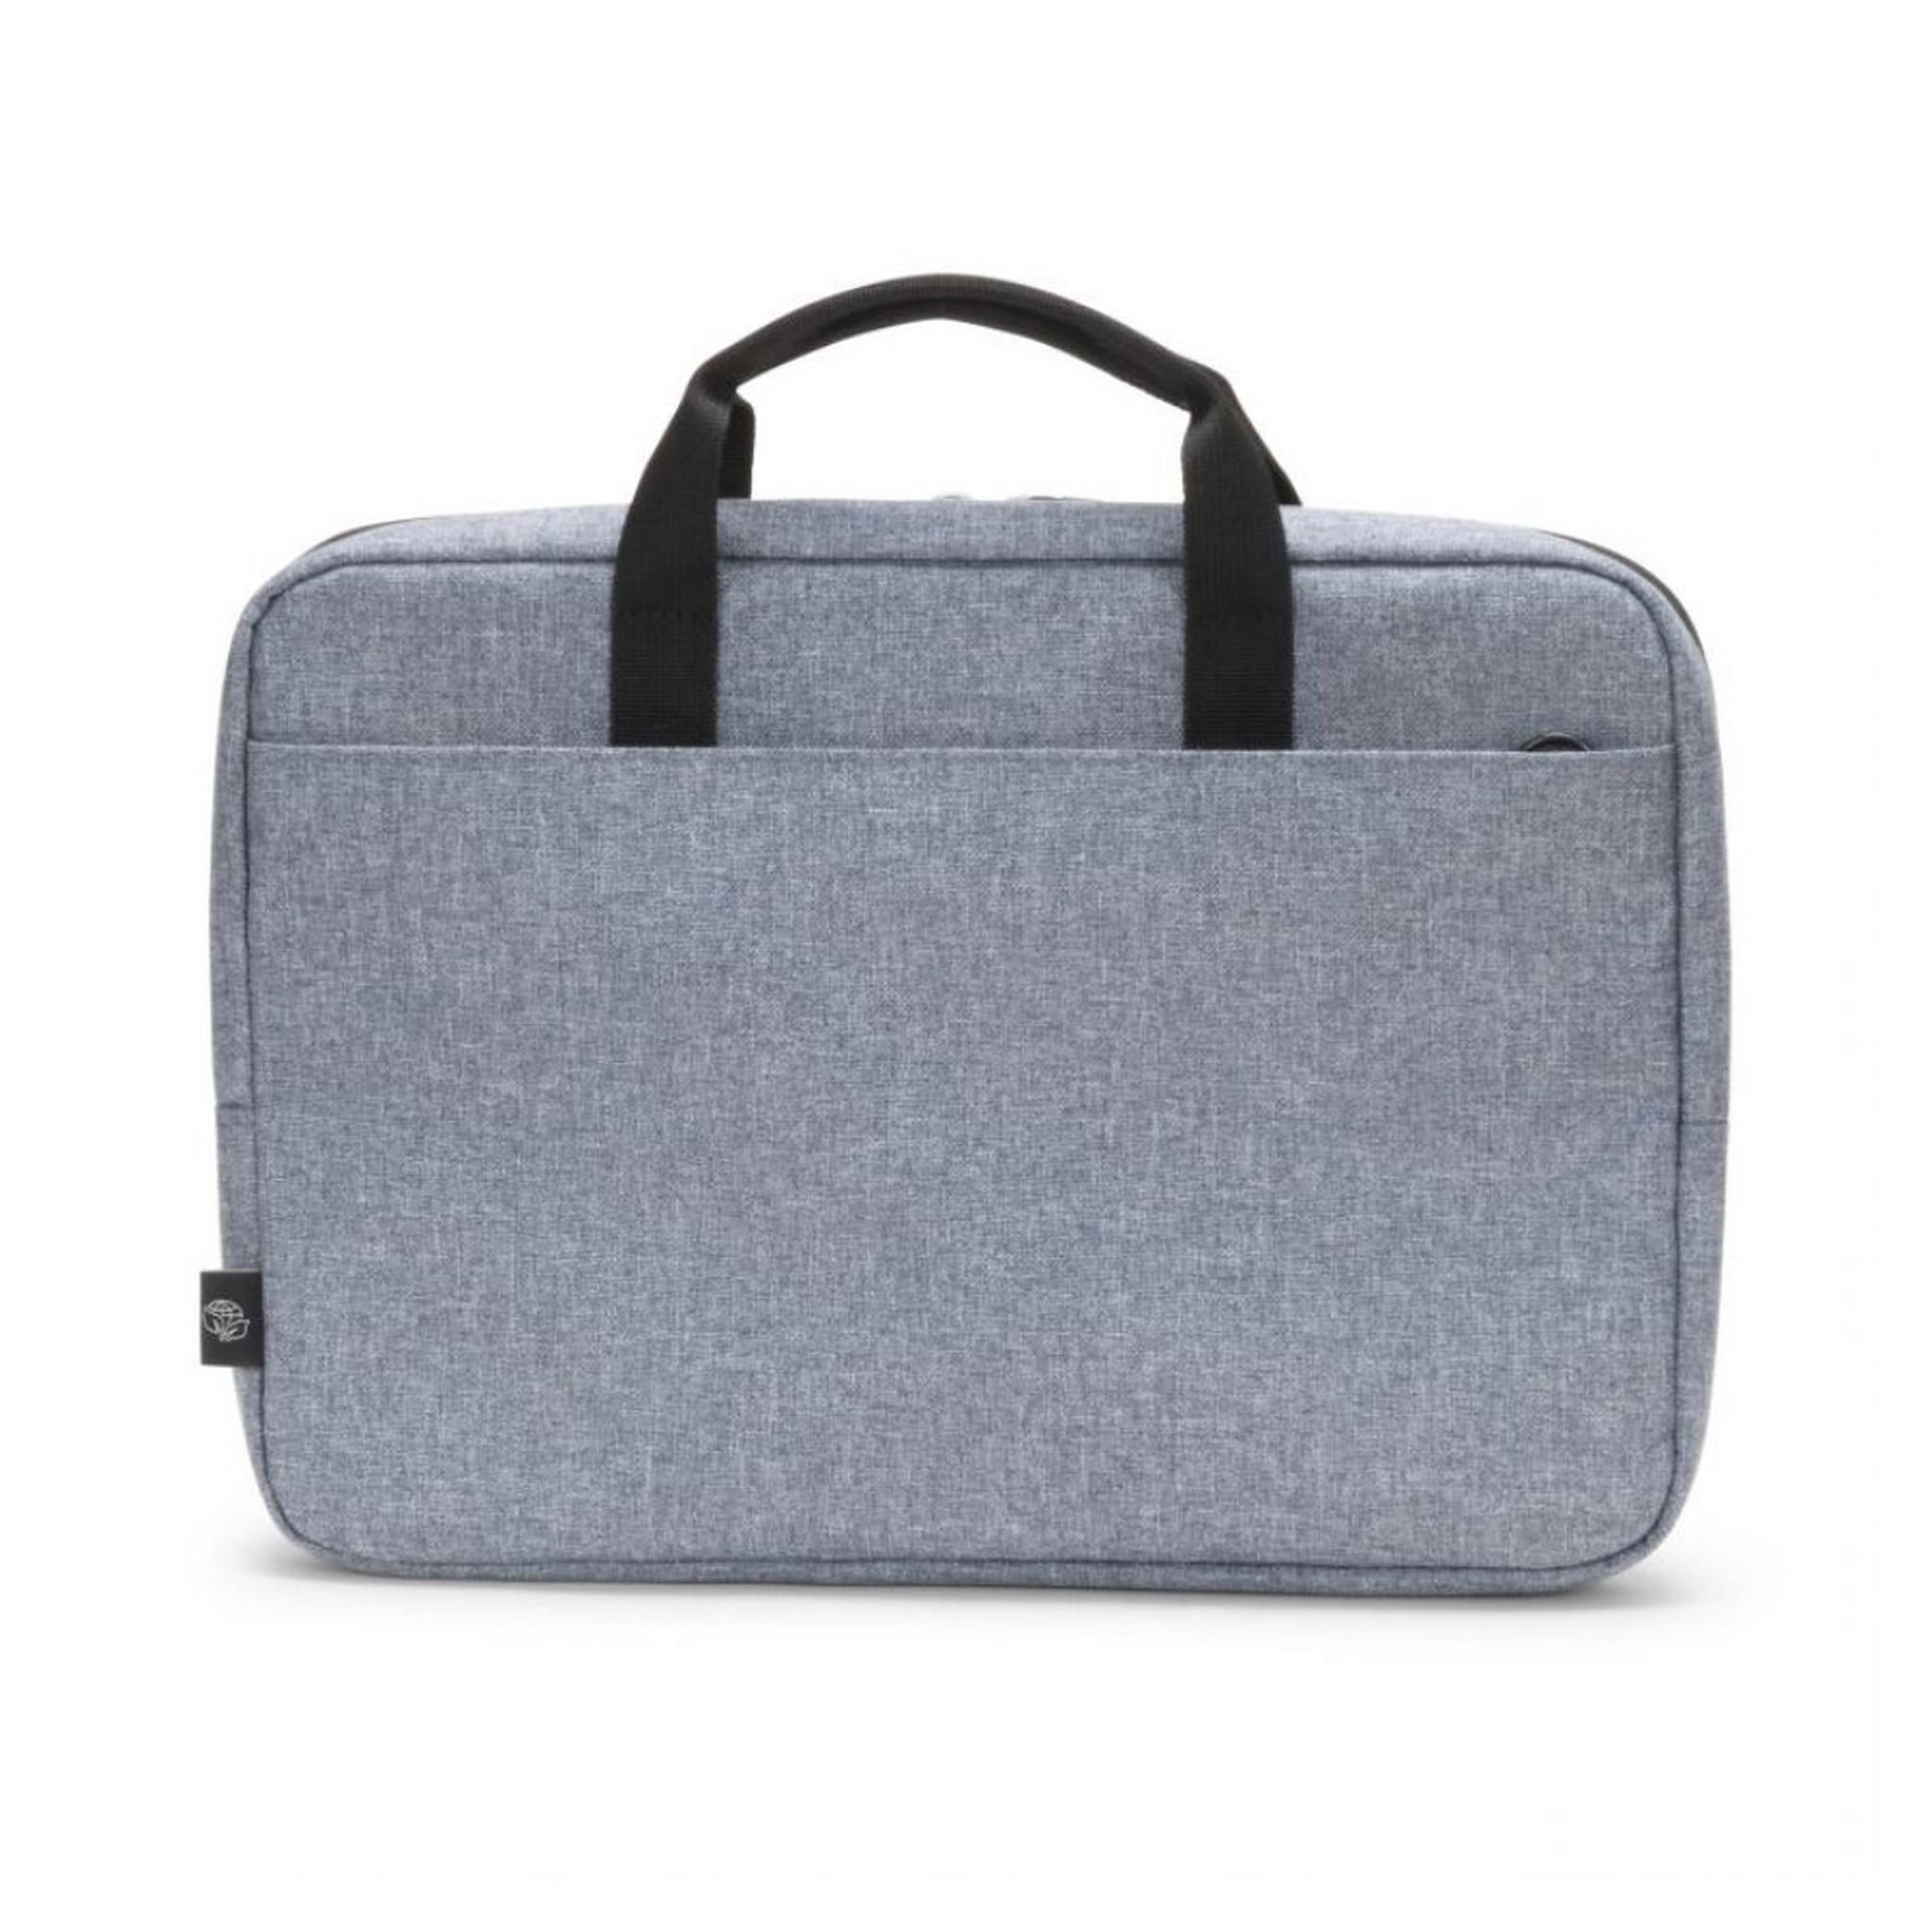 حقيبة ايكو سليم موشن للابتوب بحجم 15.6 بوصة من ديكوتا - أزرق